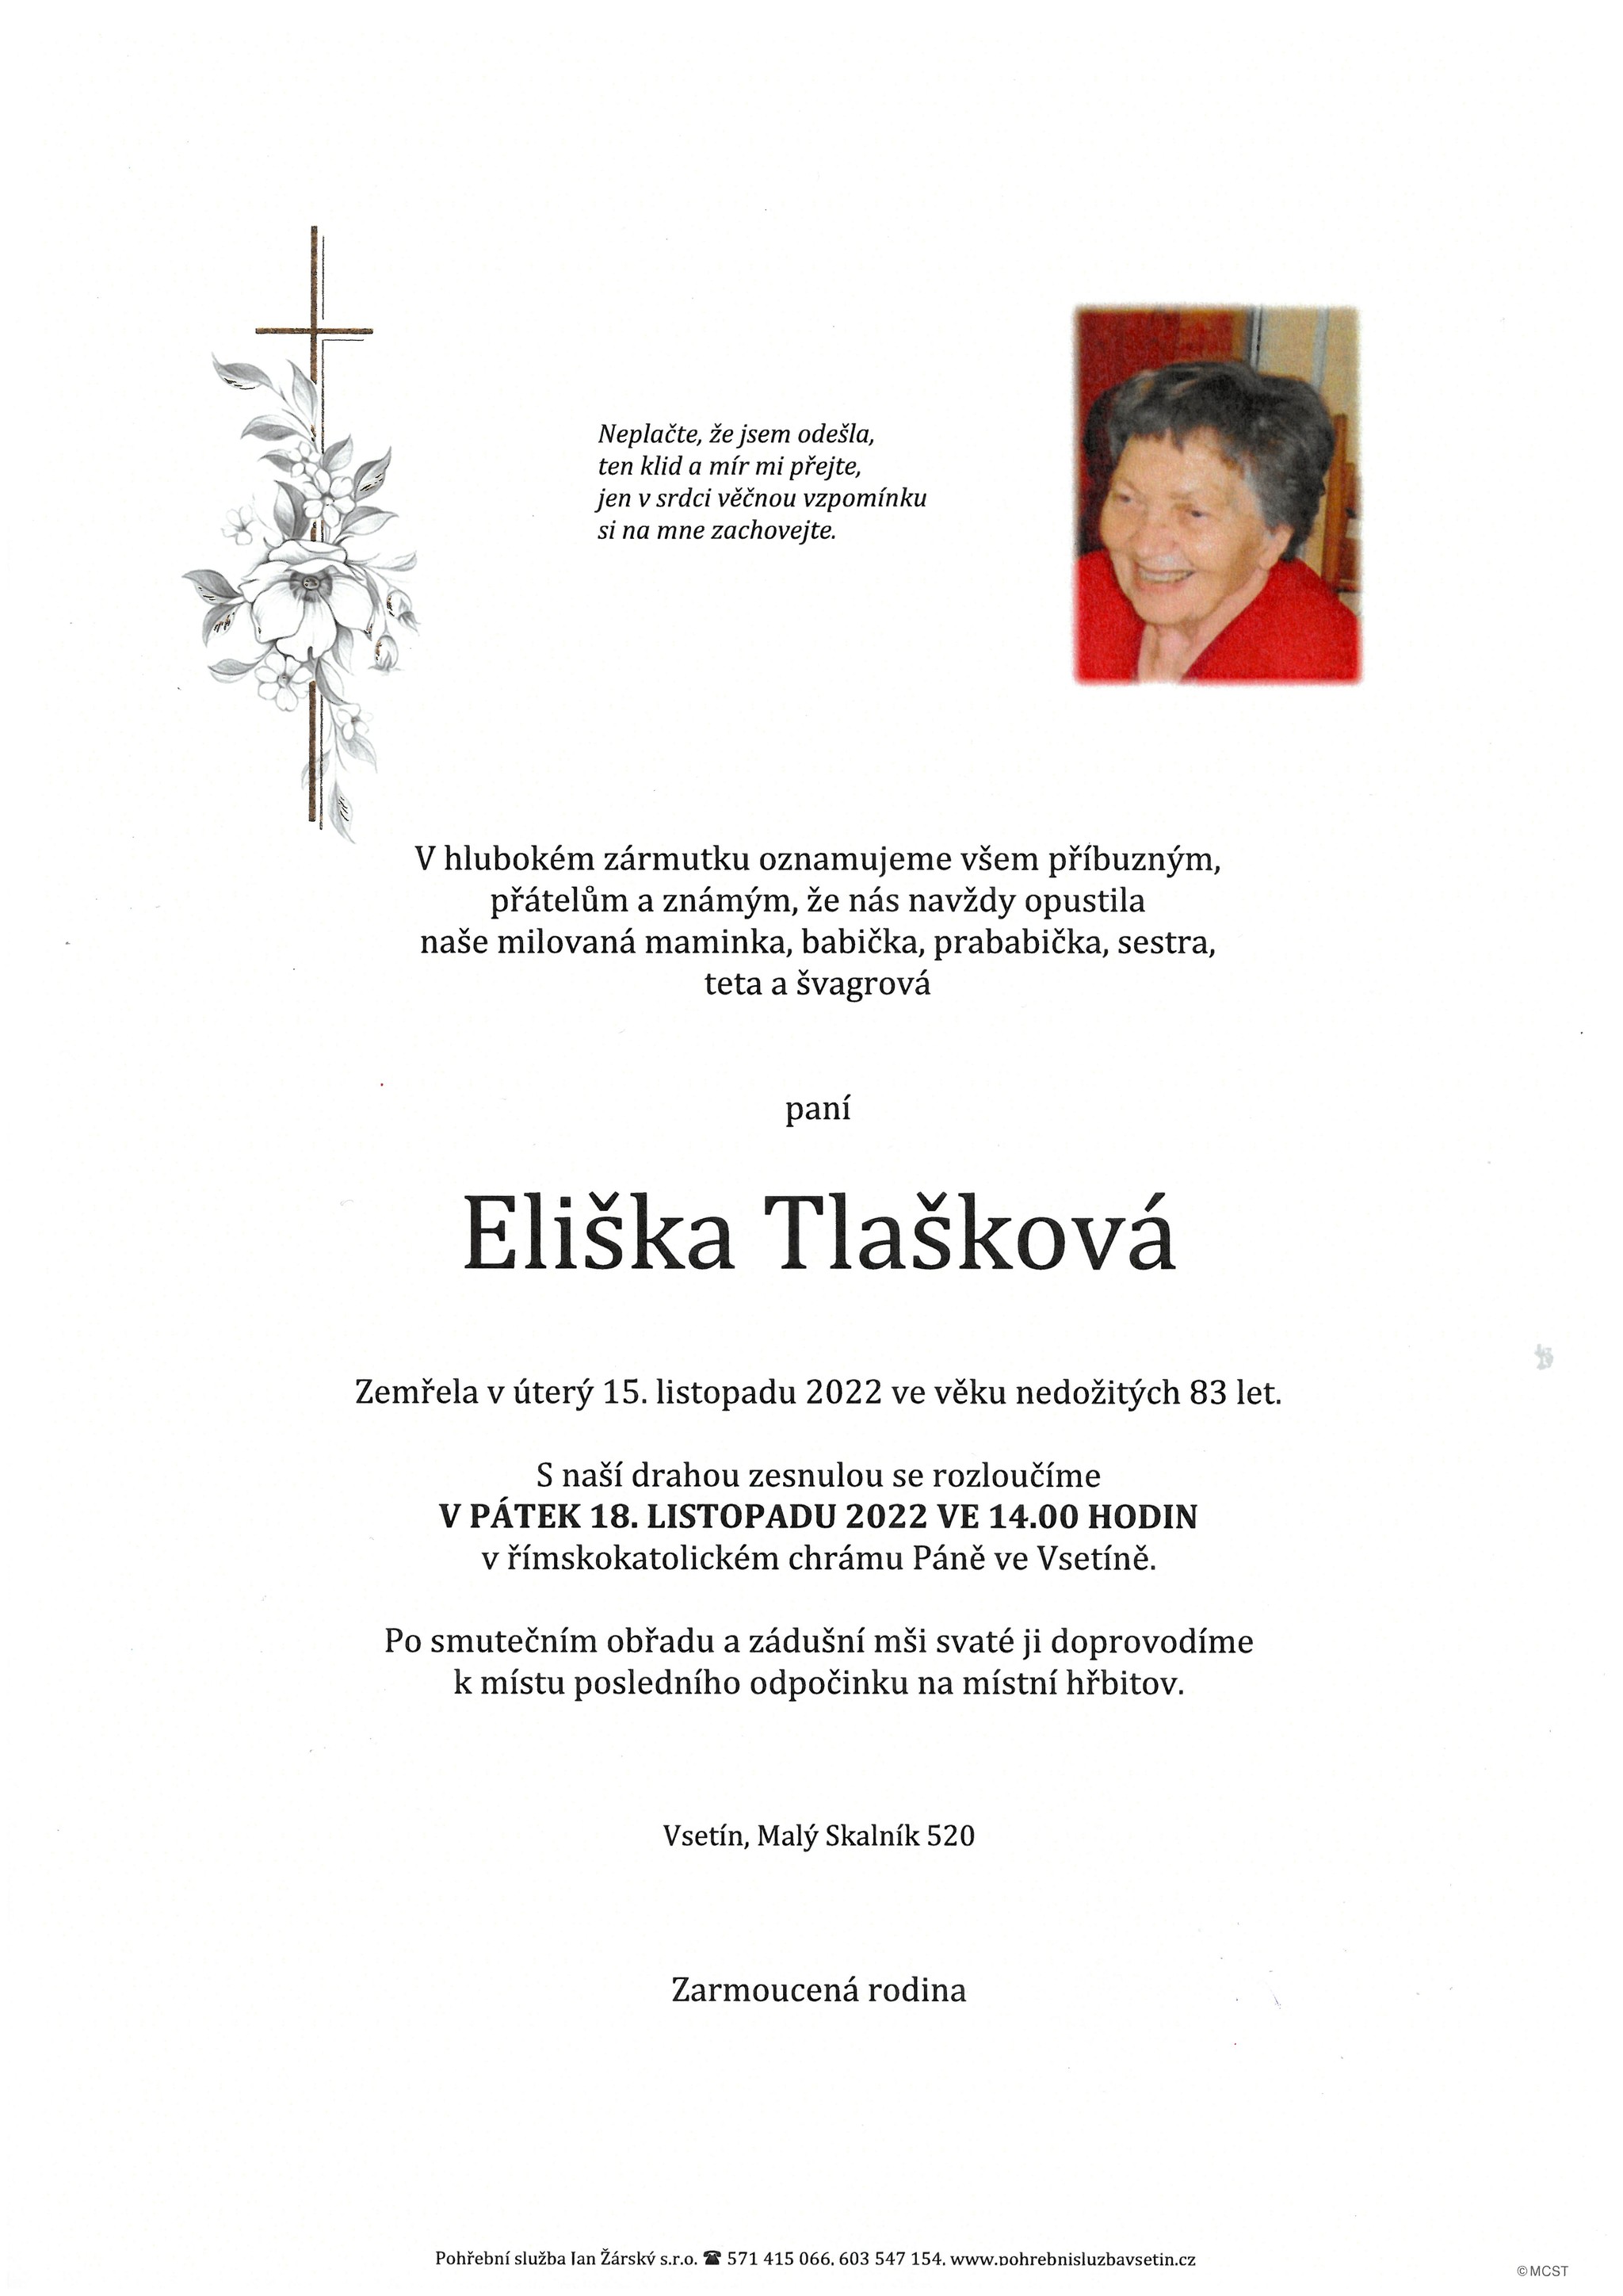 Eliška Tlašková